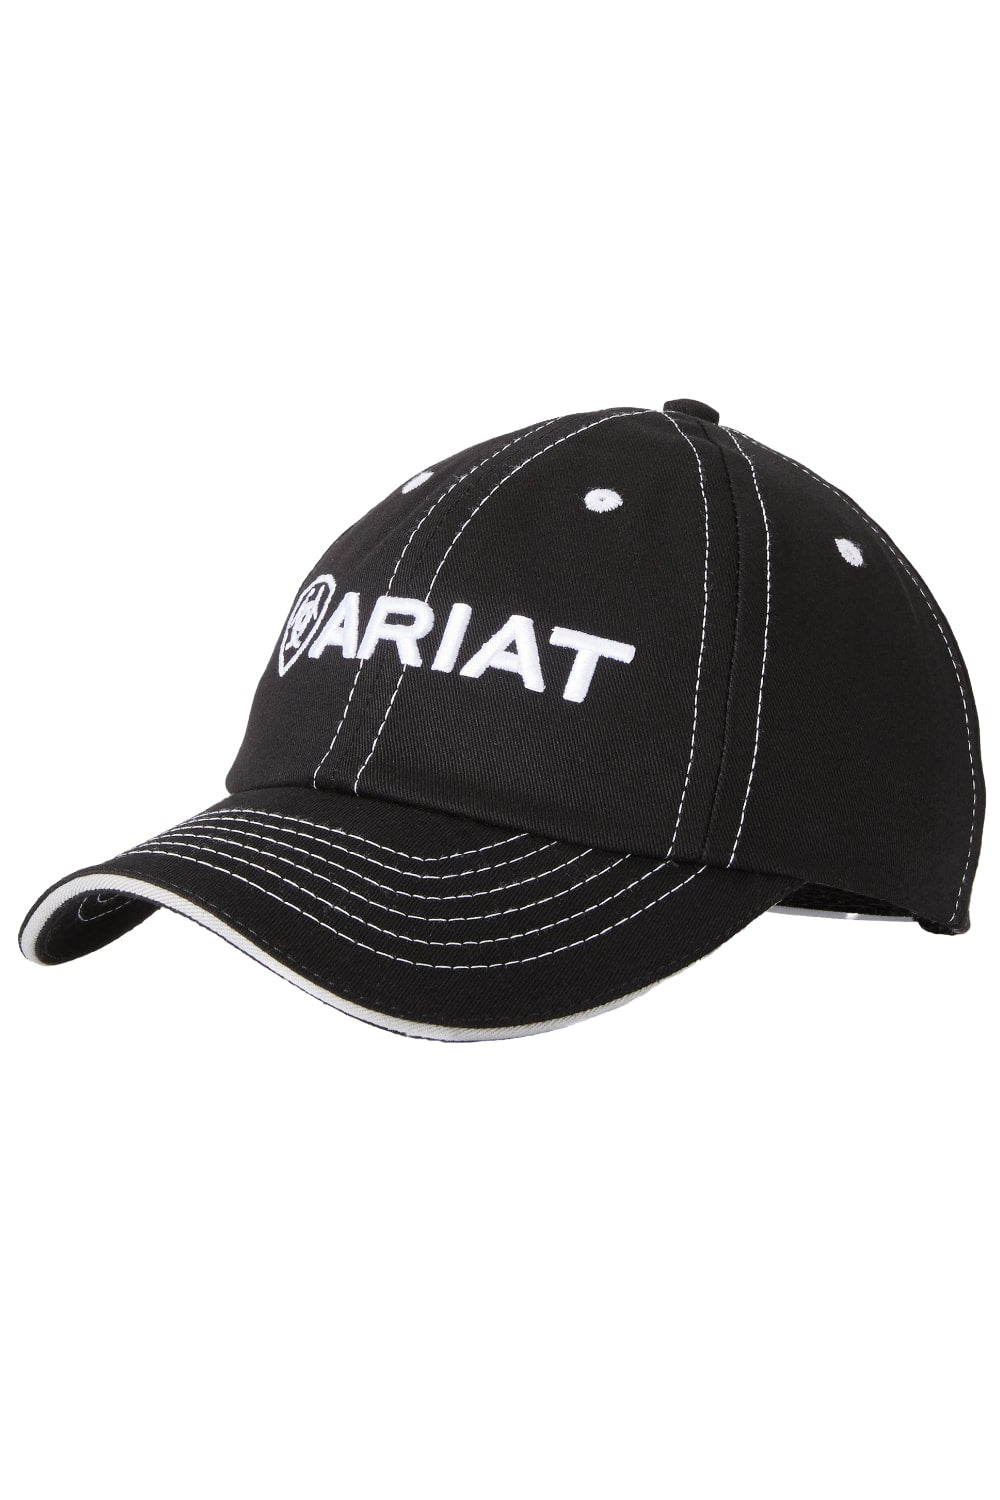 Ariat Unisex Team II Cap in Black 